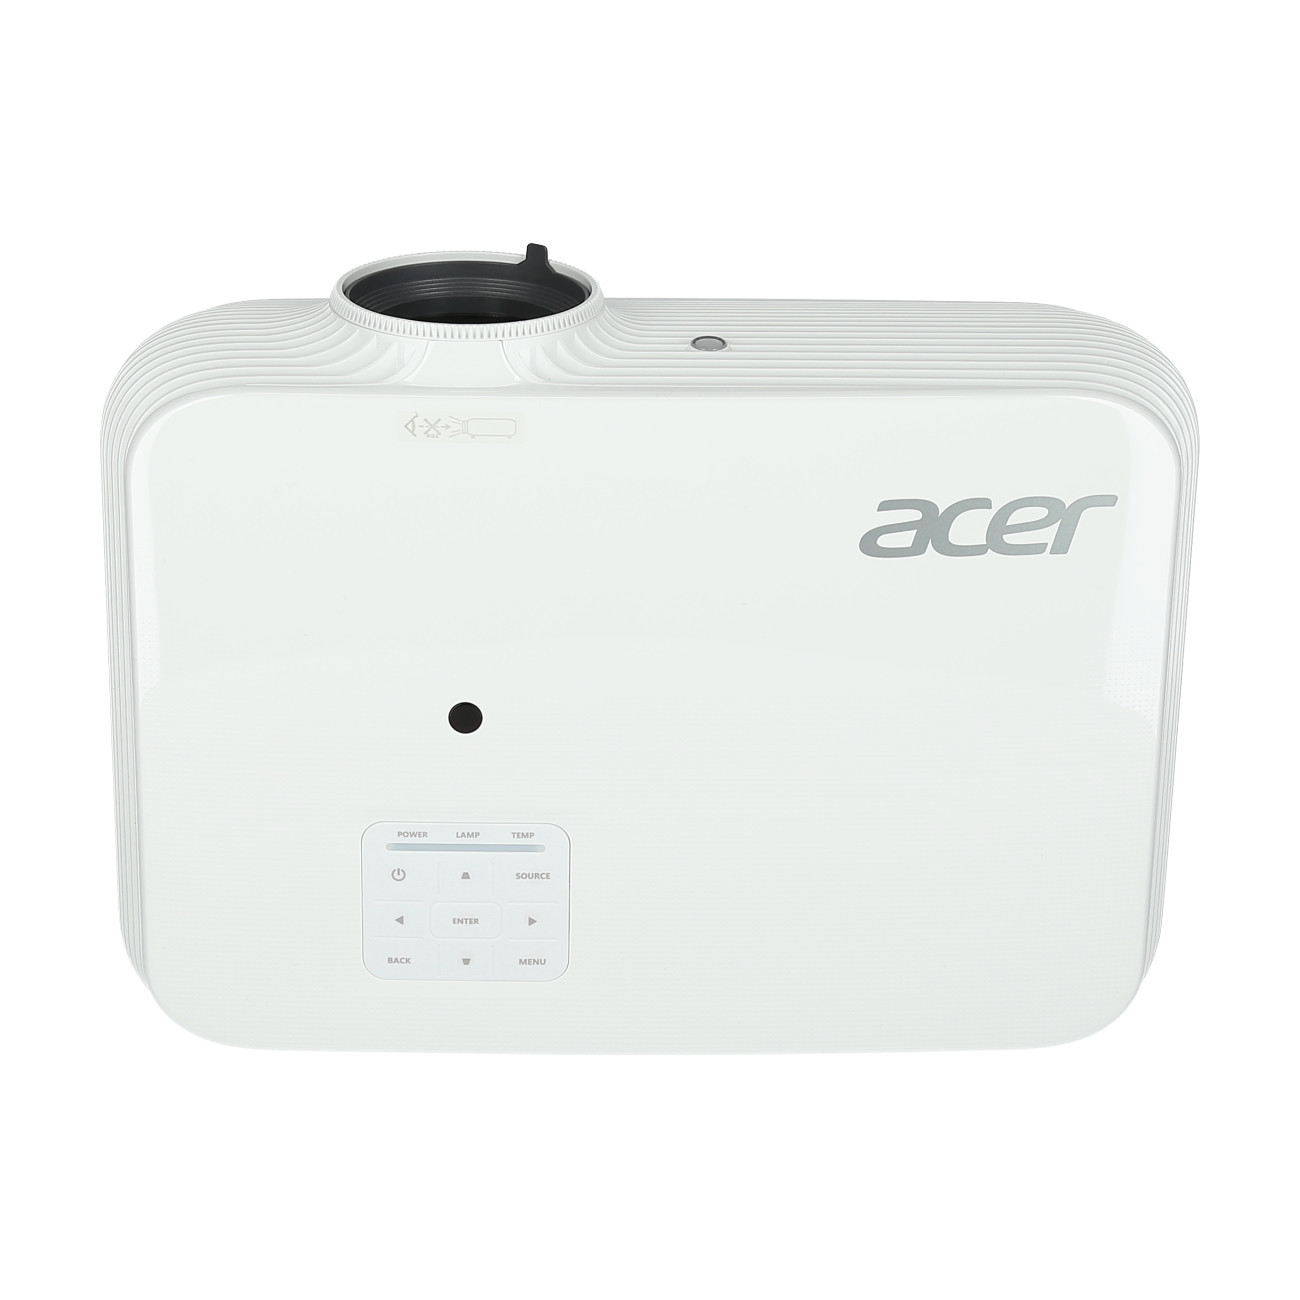 Vorschau: Acer P5535 Business Beamer mit 4500 ANSI-Lumen und Full HD Auflösung